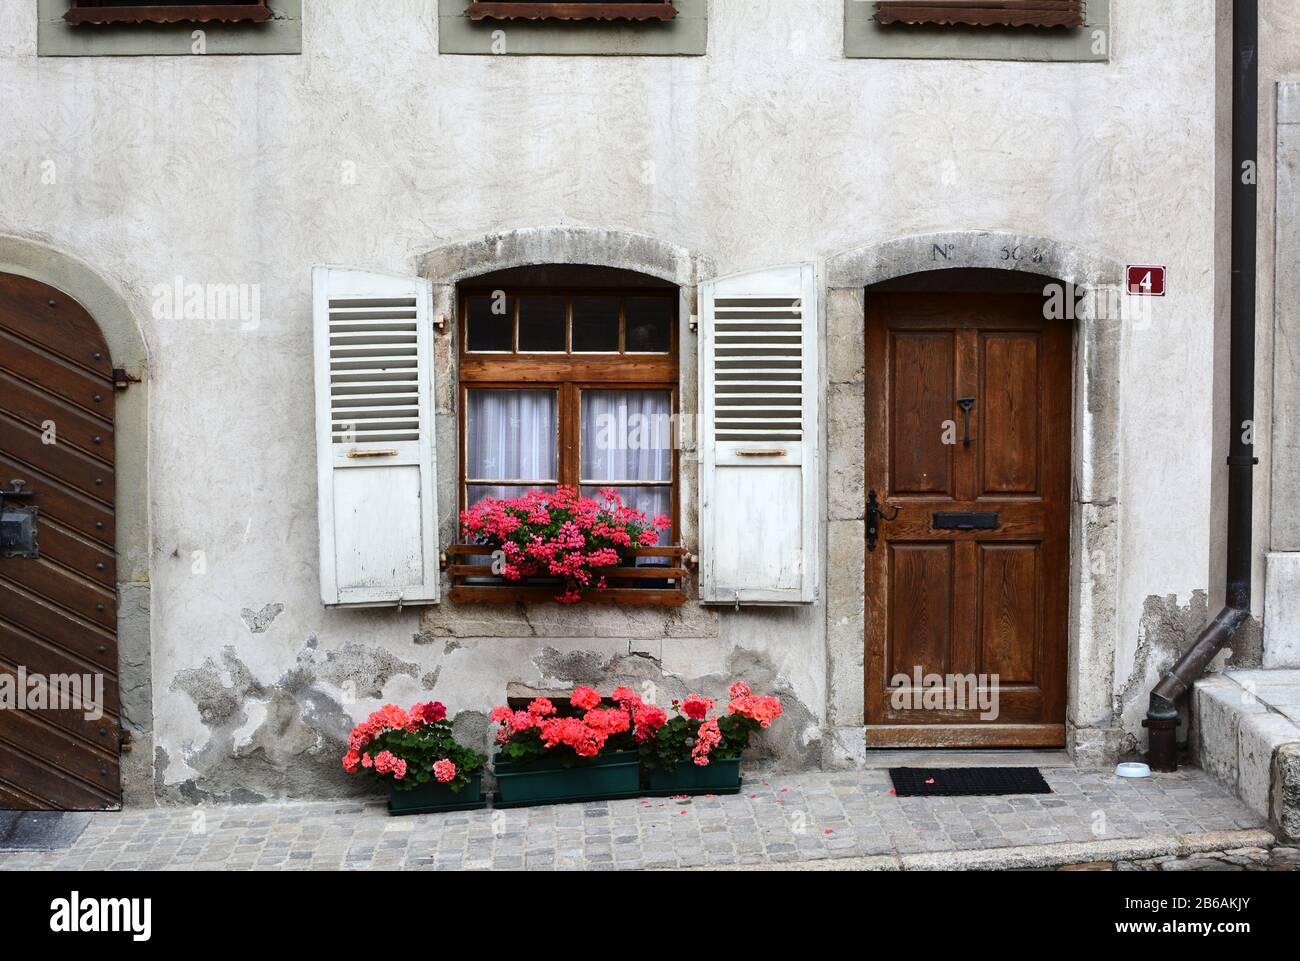 Gruyères, SUISSE - 8 JUILLET 2014 : porte d'entrée sur la maison suisse traditionnelle. La maison pittoresque se trouve dans la rue principale pavée de la vieille ville de Gruyer Banque D'Images